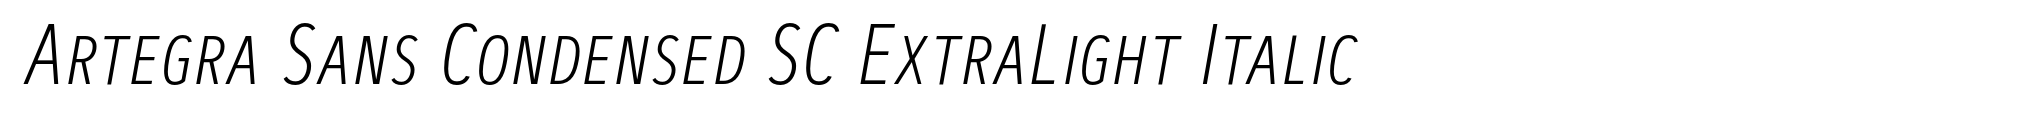 Artegra Sans Condensed SC ExtraLight Italic image